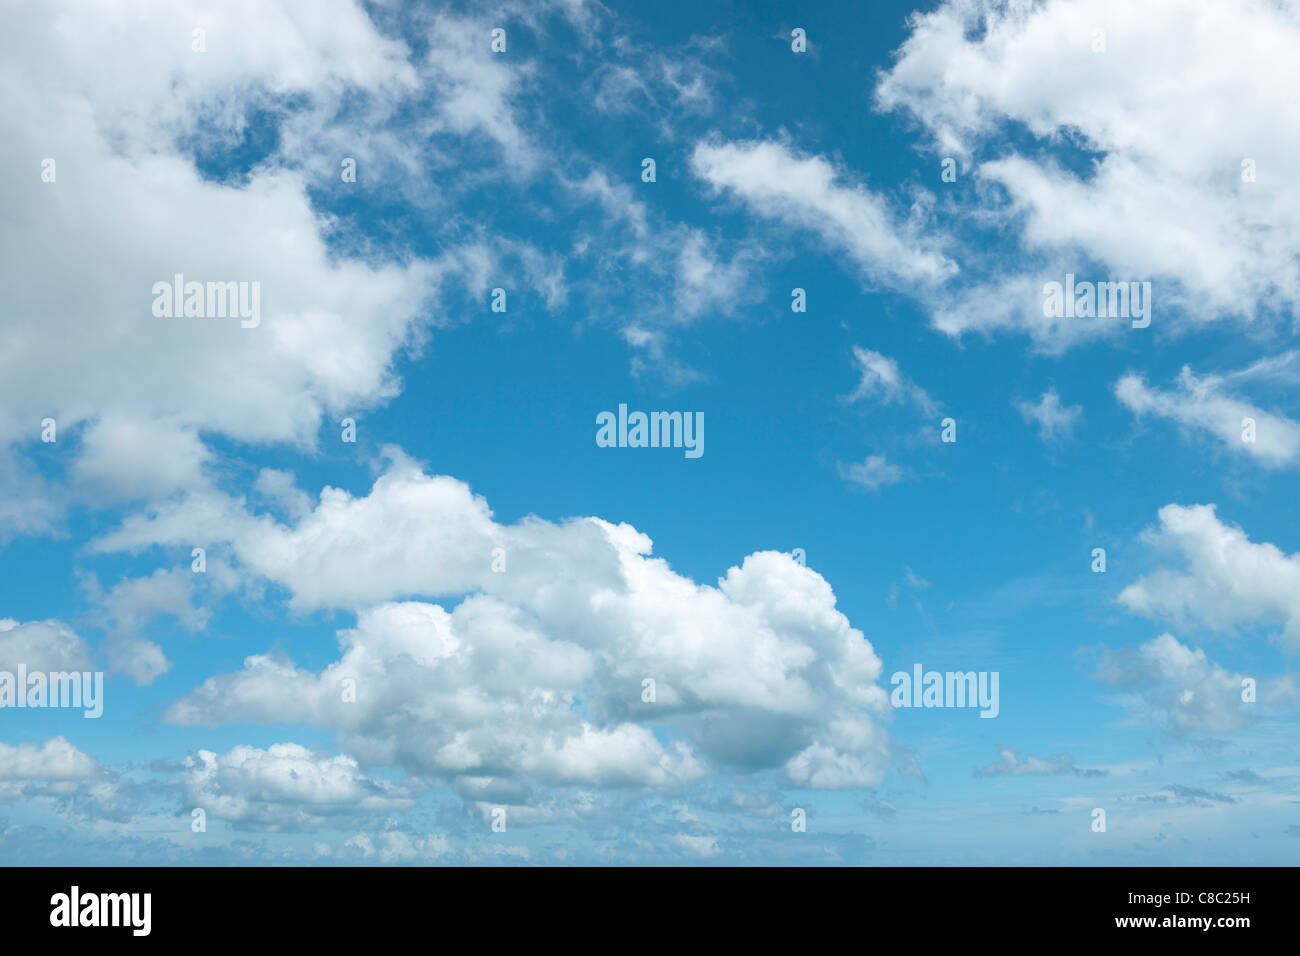 Alta risoluzione colpo di un bel cielo nuvoloso. Fatta da diversi scatti, cuciti insieme per ottenere una risoluzione alta. Foto Stock